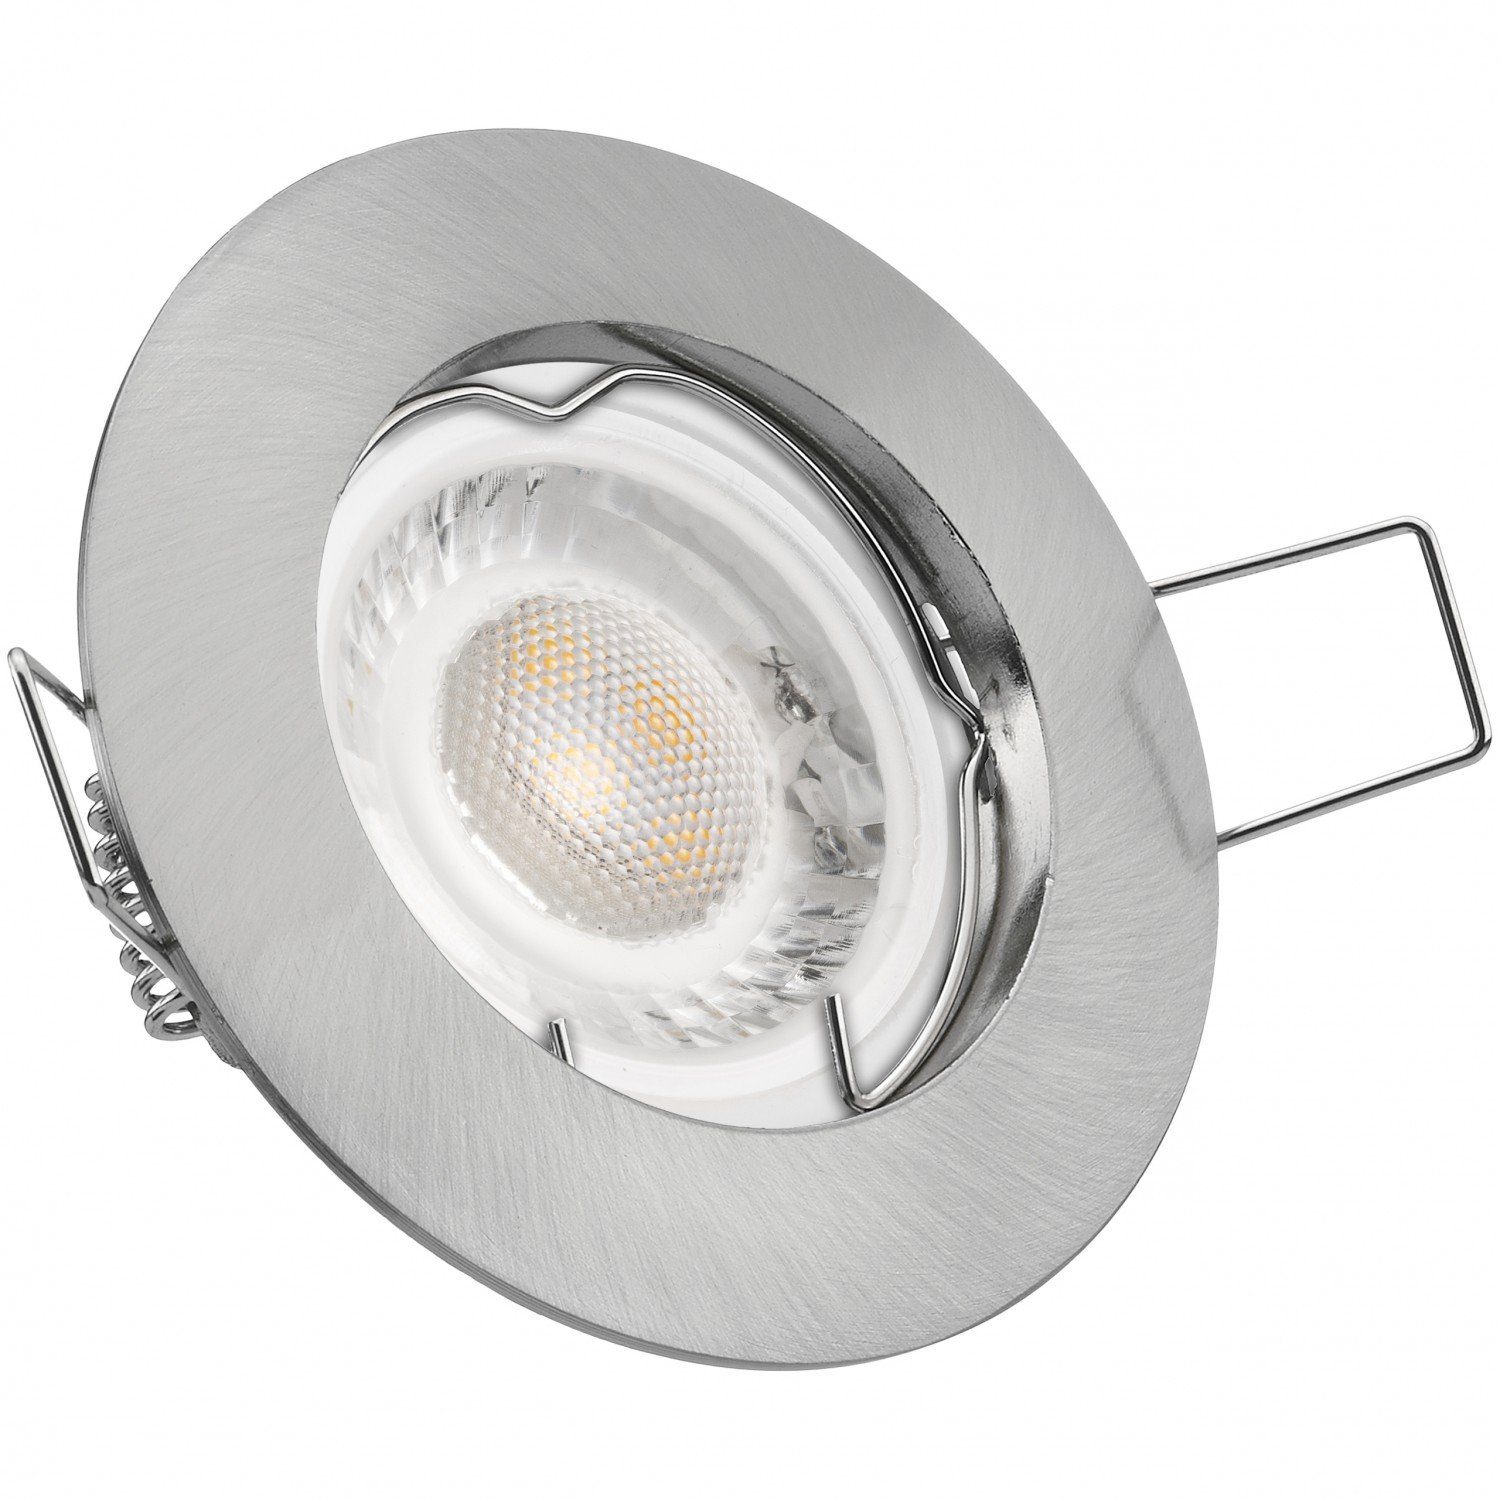 LEDANDO LED Einbaustrahler LED Einbaustrahler Set extra flach in edelstahl / silber gebürstet mit